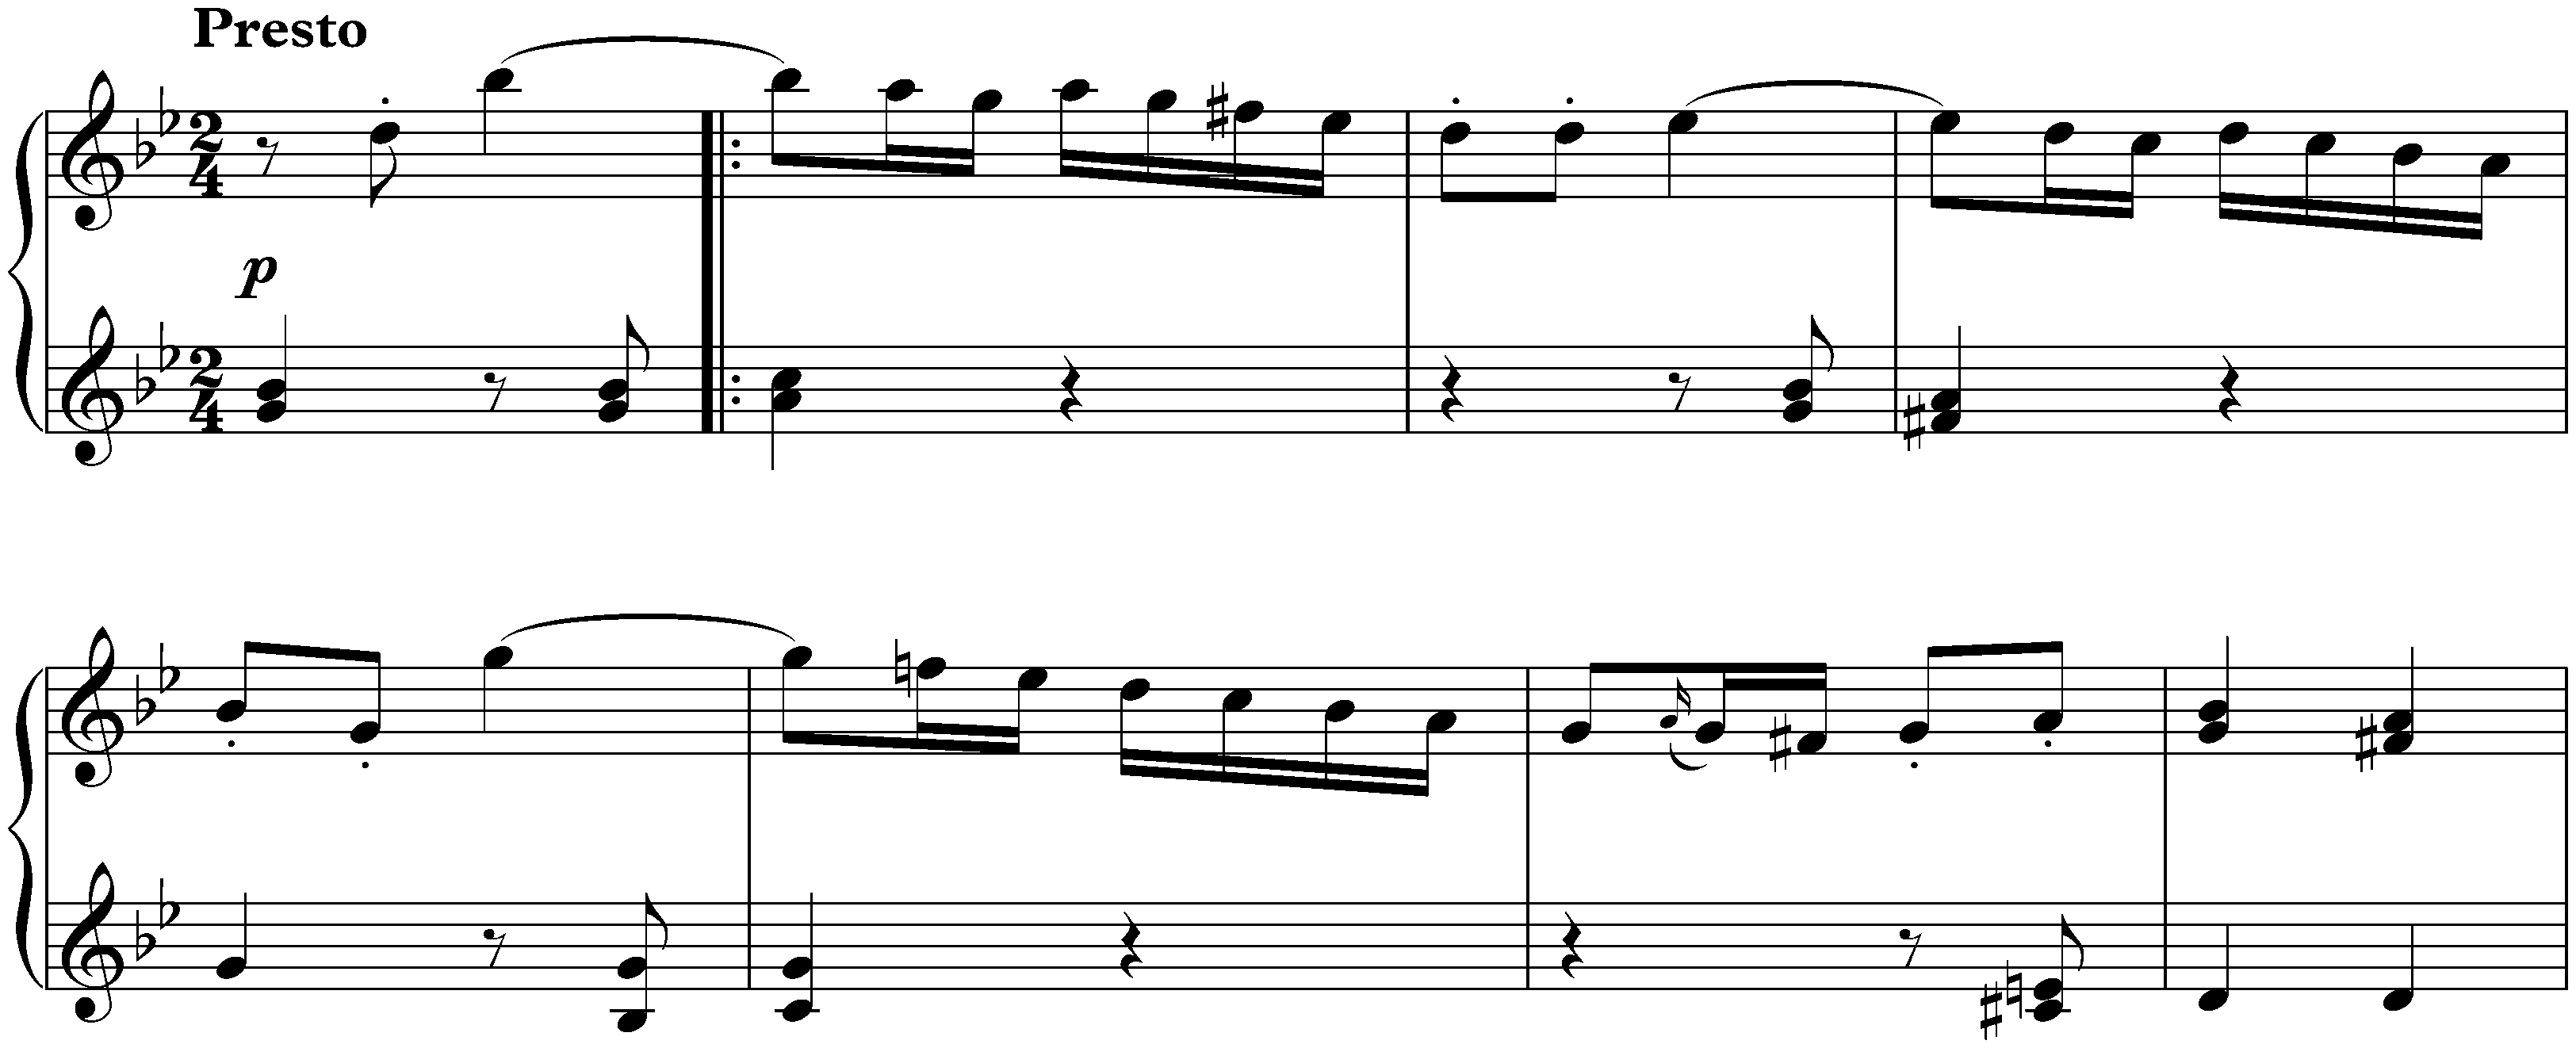 Sonata in G minor, op. 105; 3. Presto